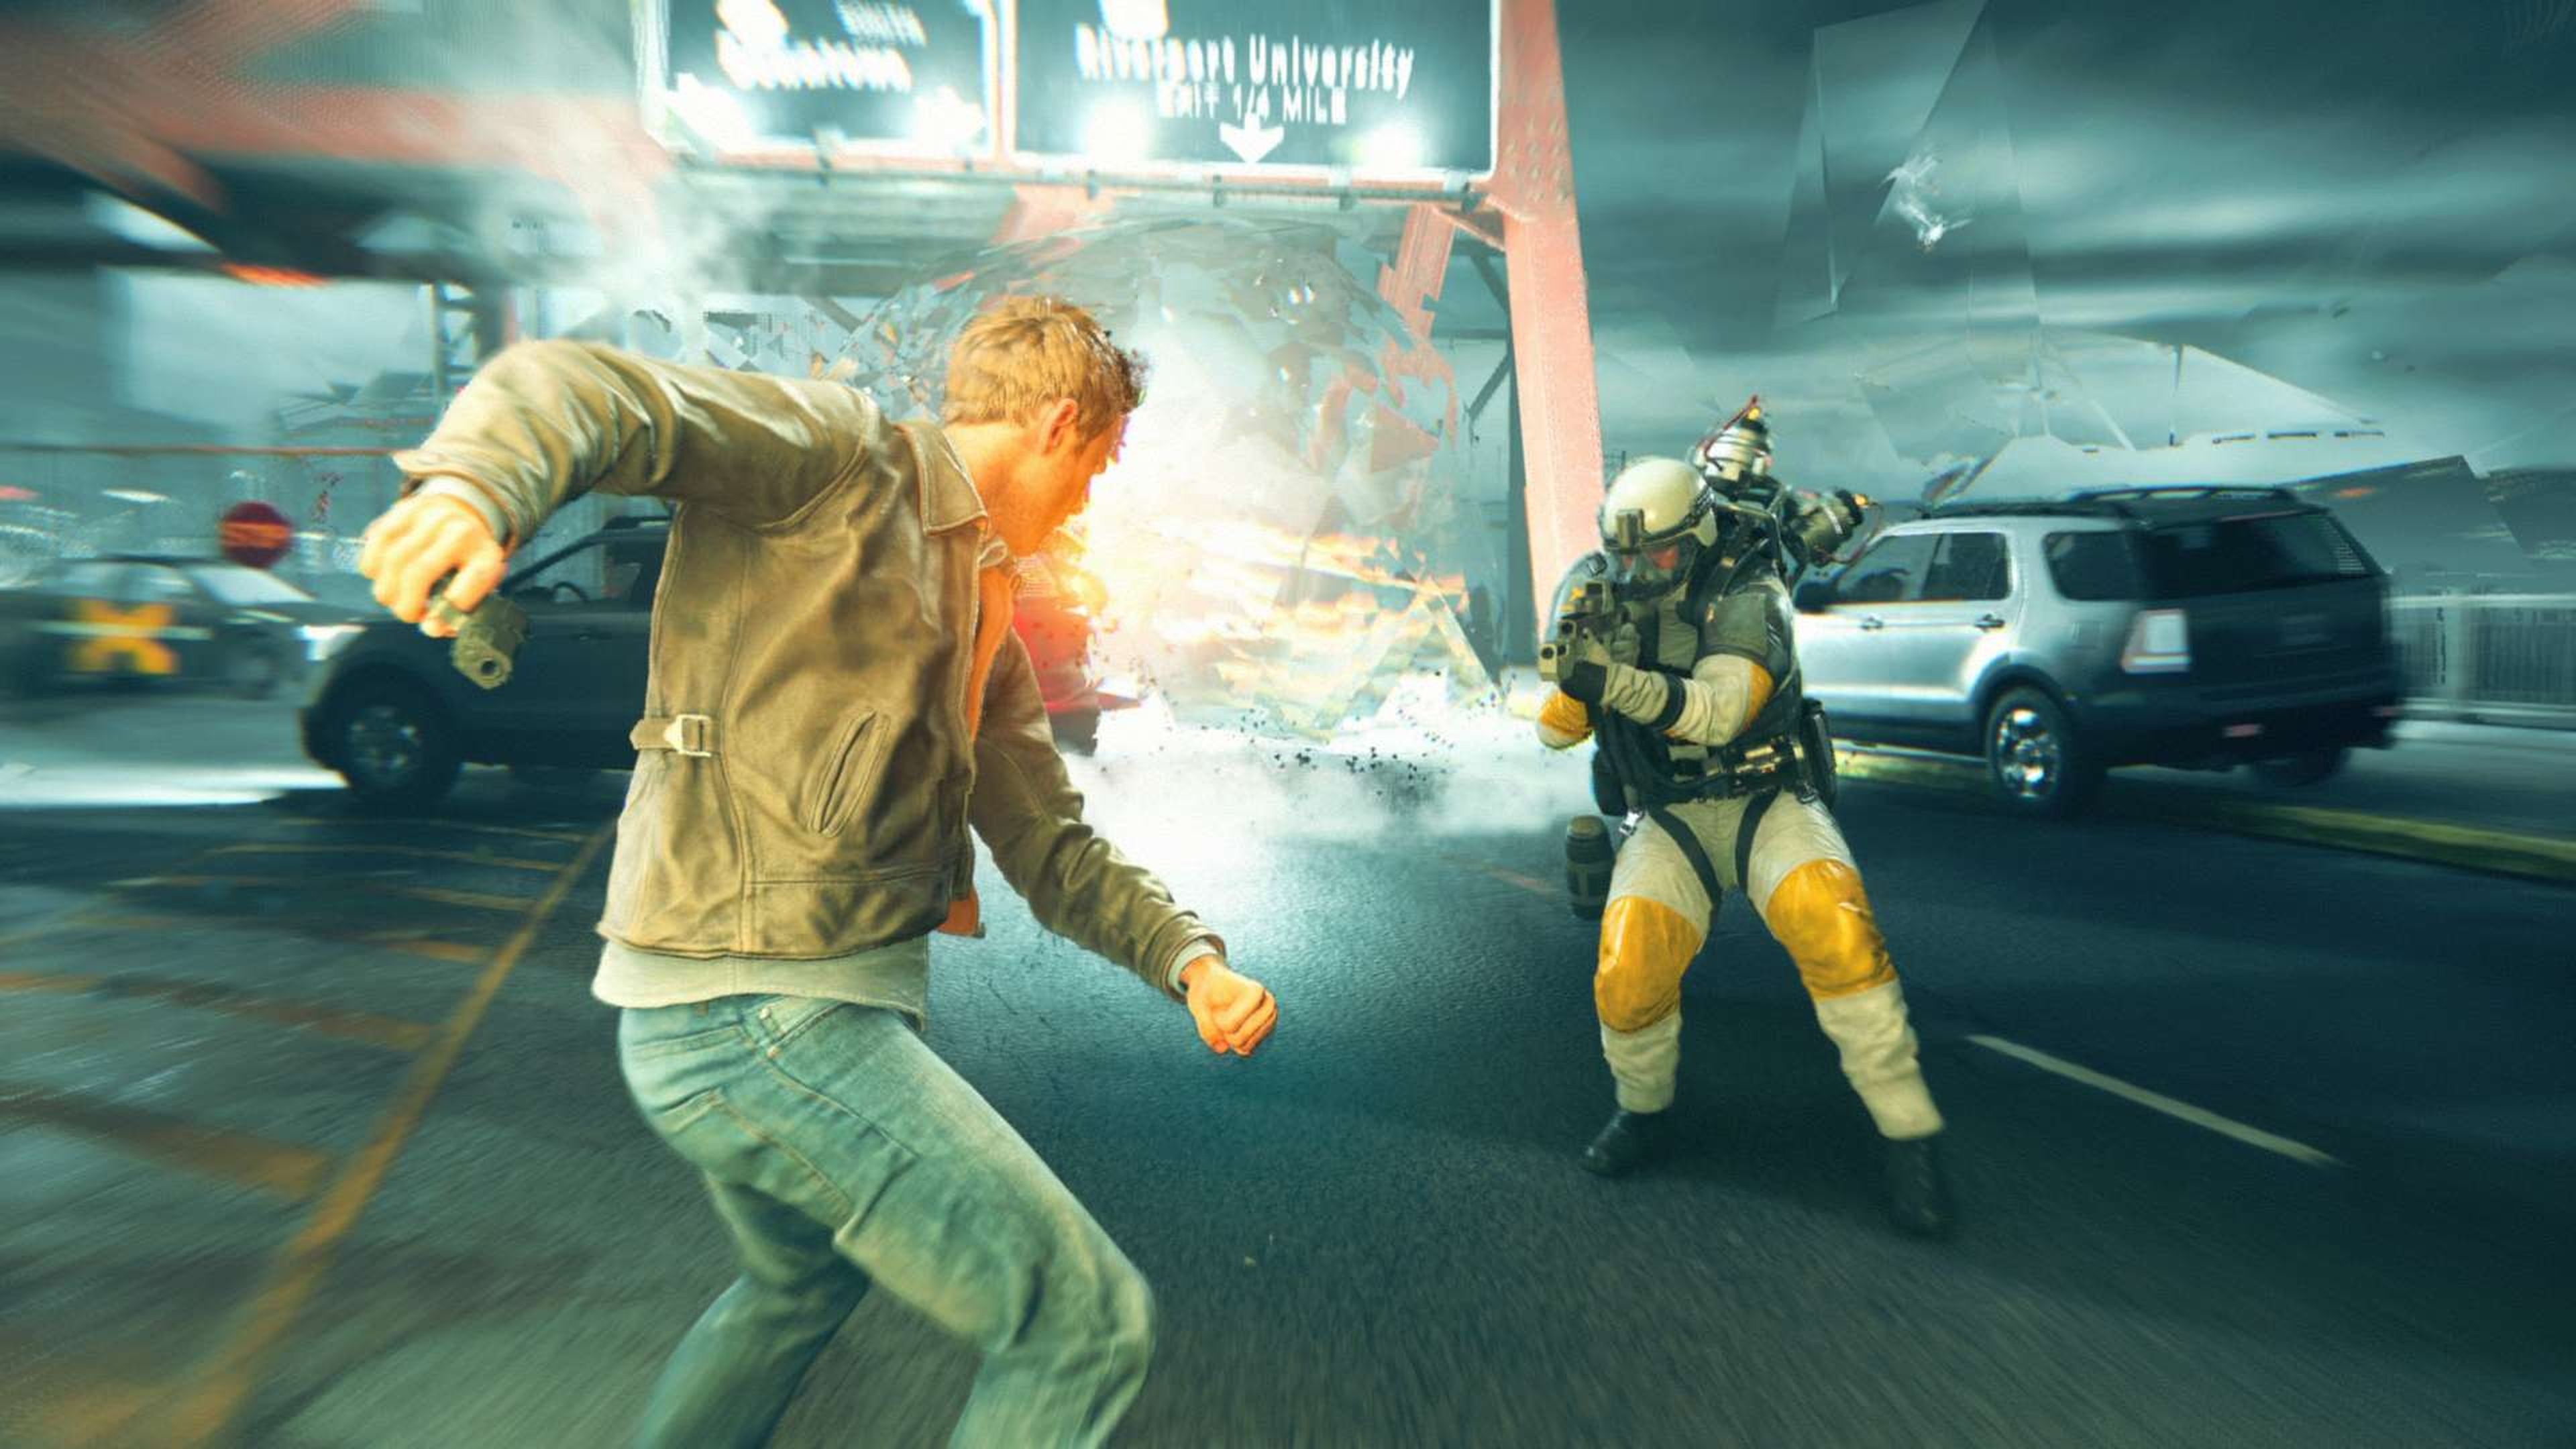 Quantum Break - Análisis para Xbox One y PC